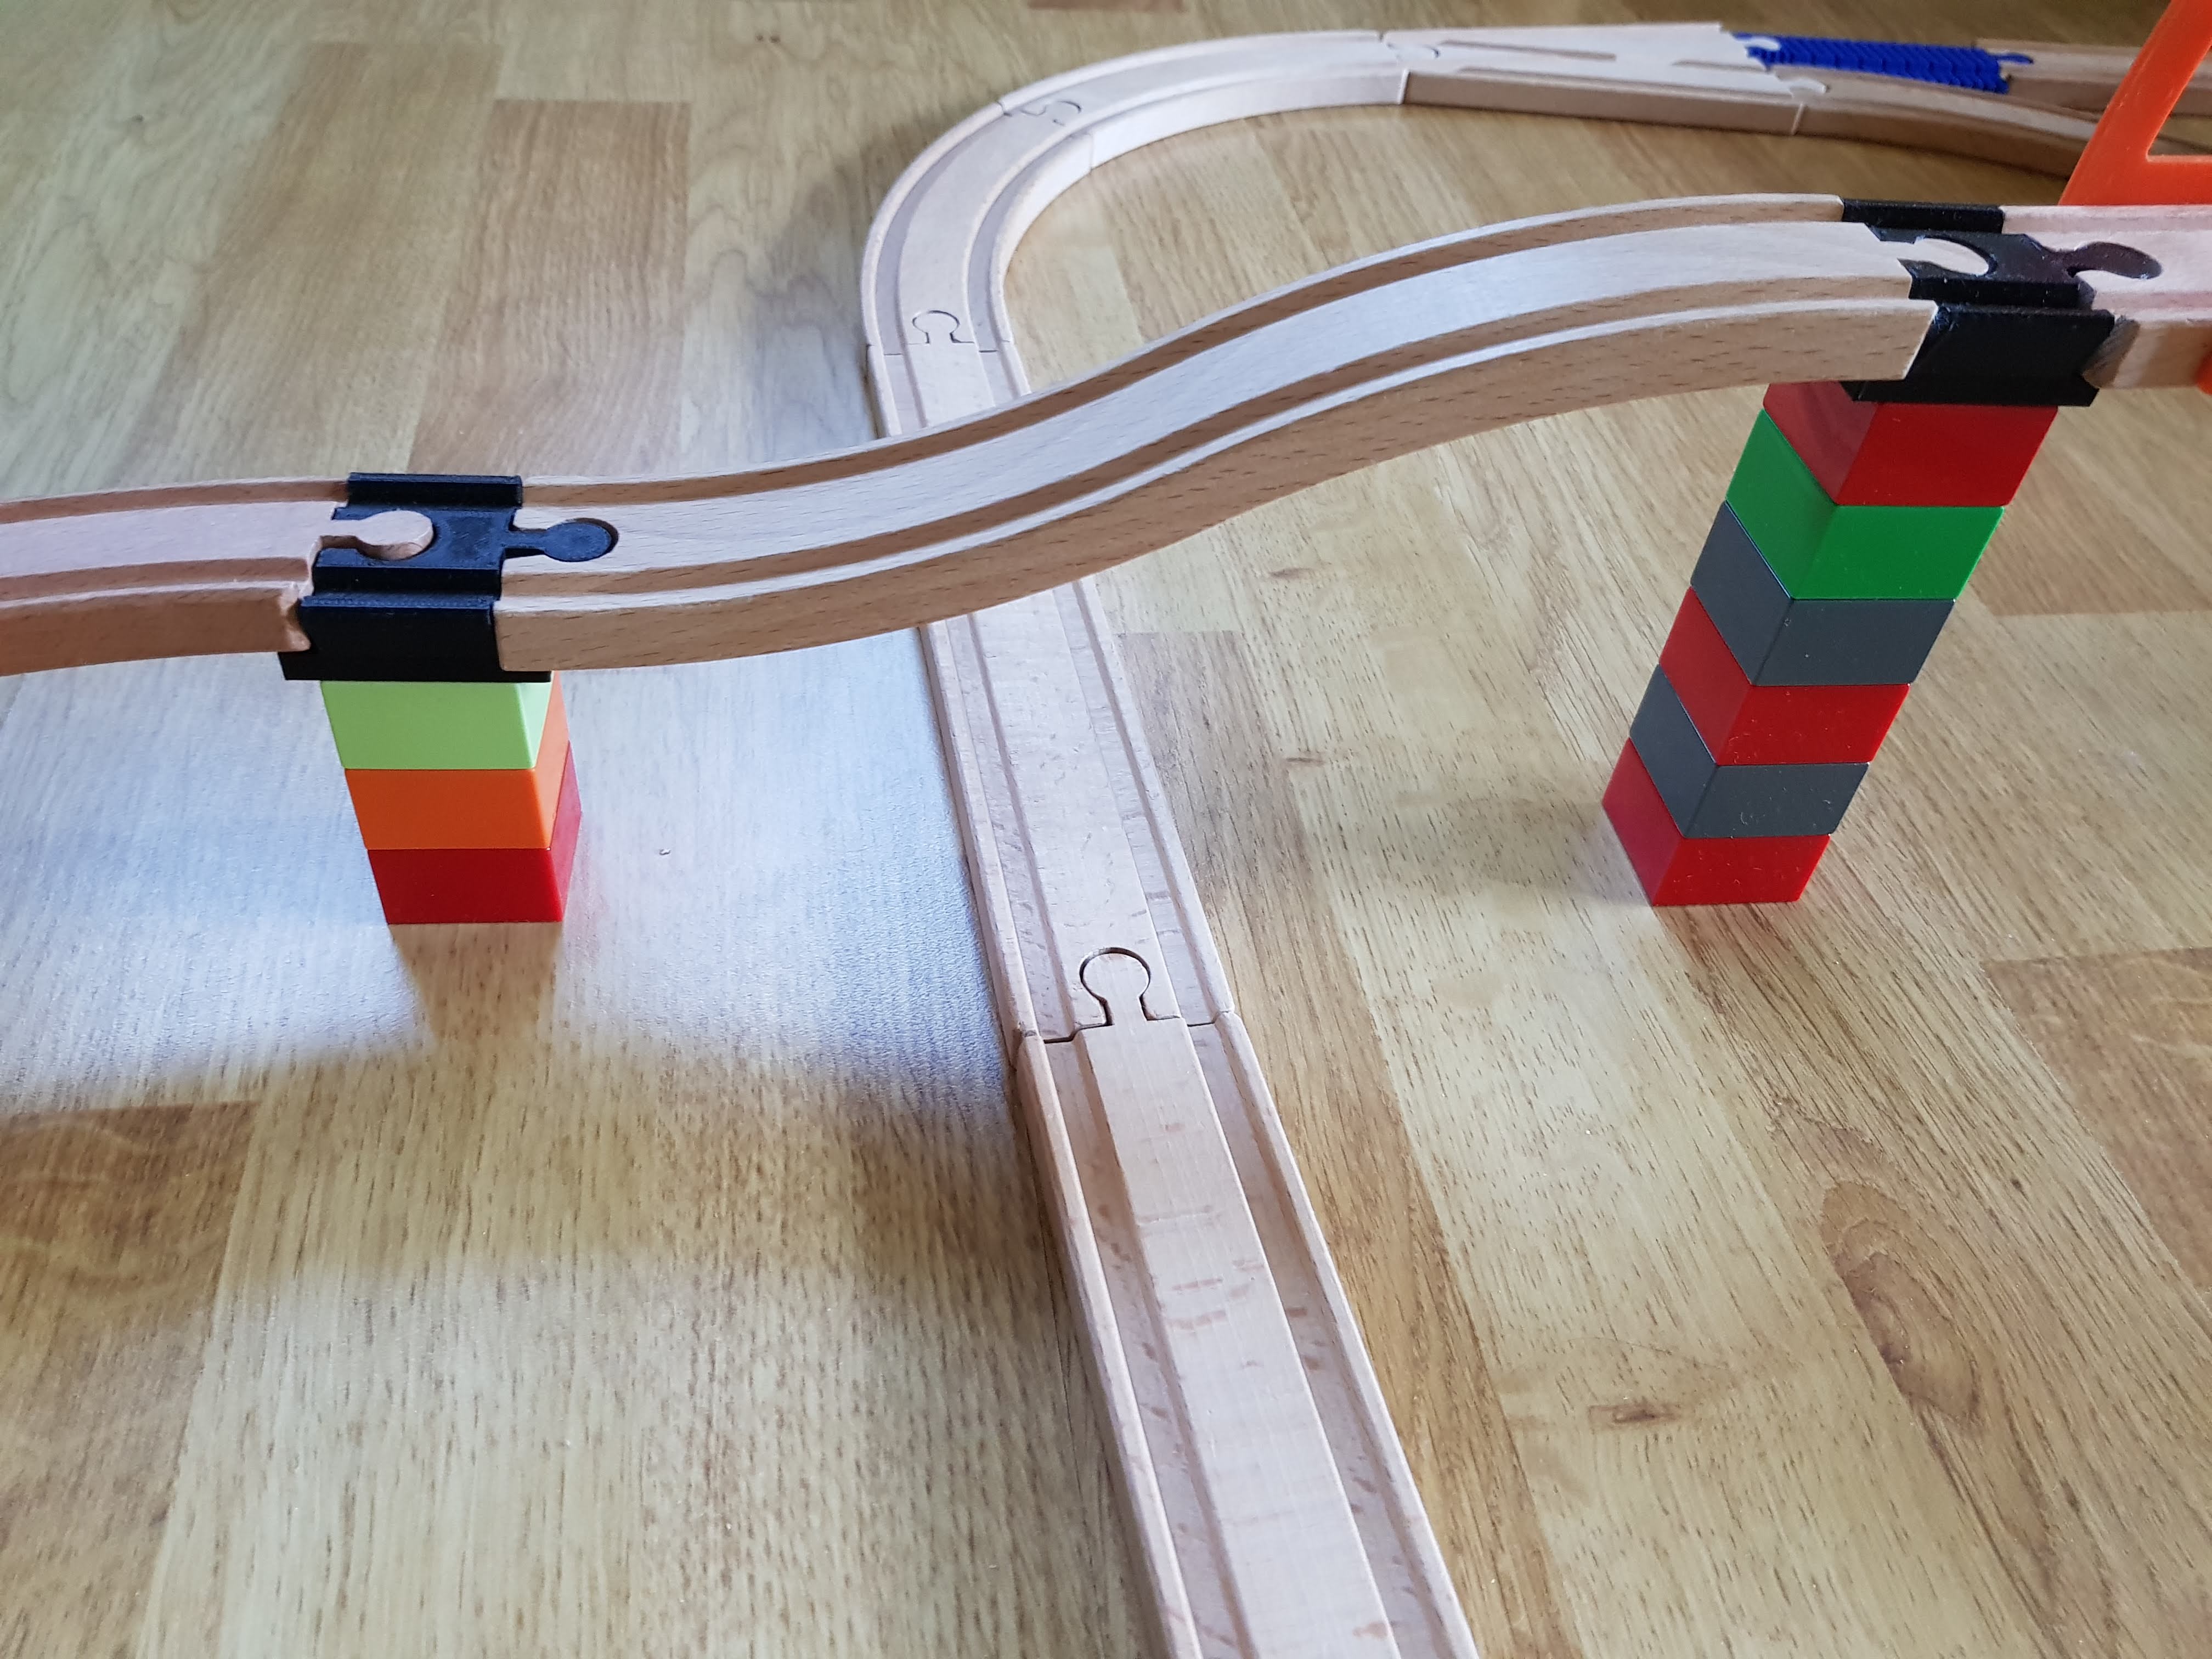 Compatible to Ikea/Brio rail to Compatible Duplo blocks